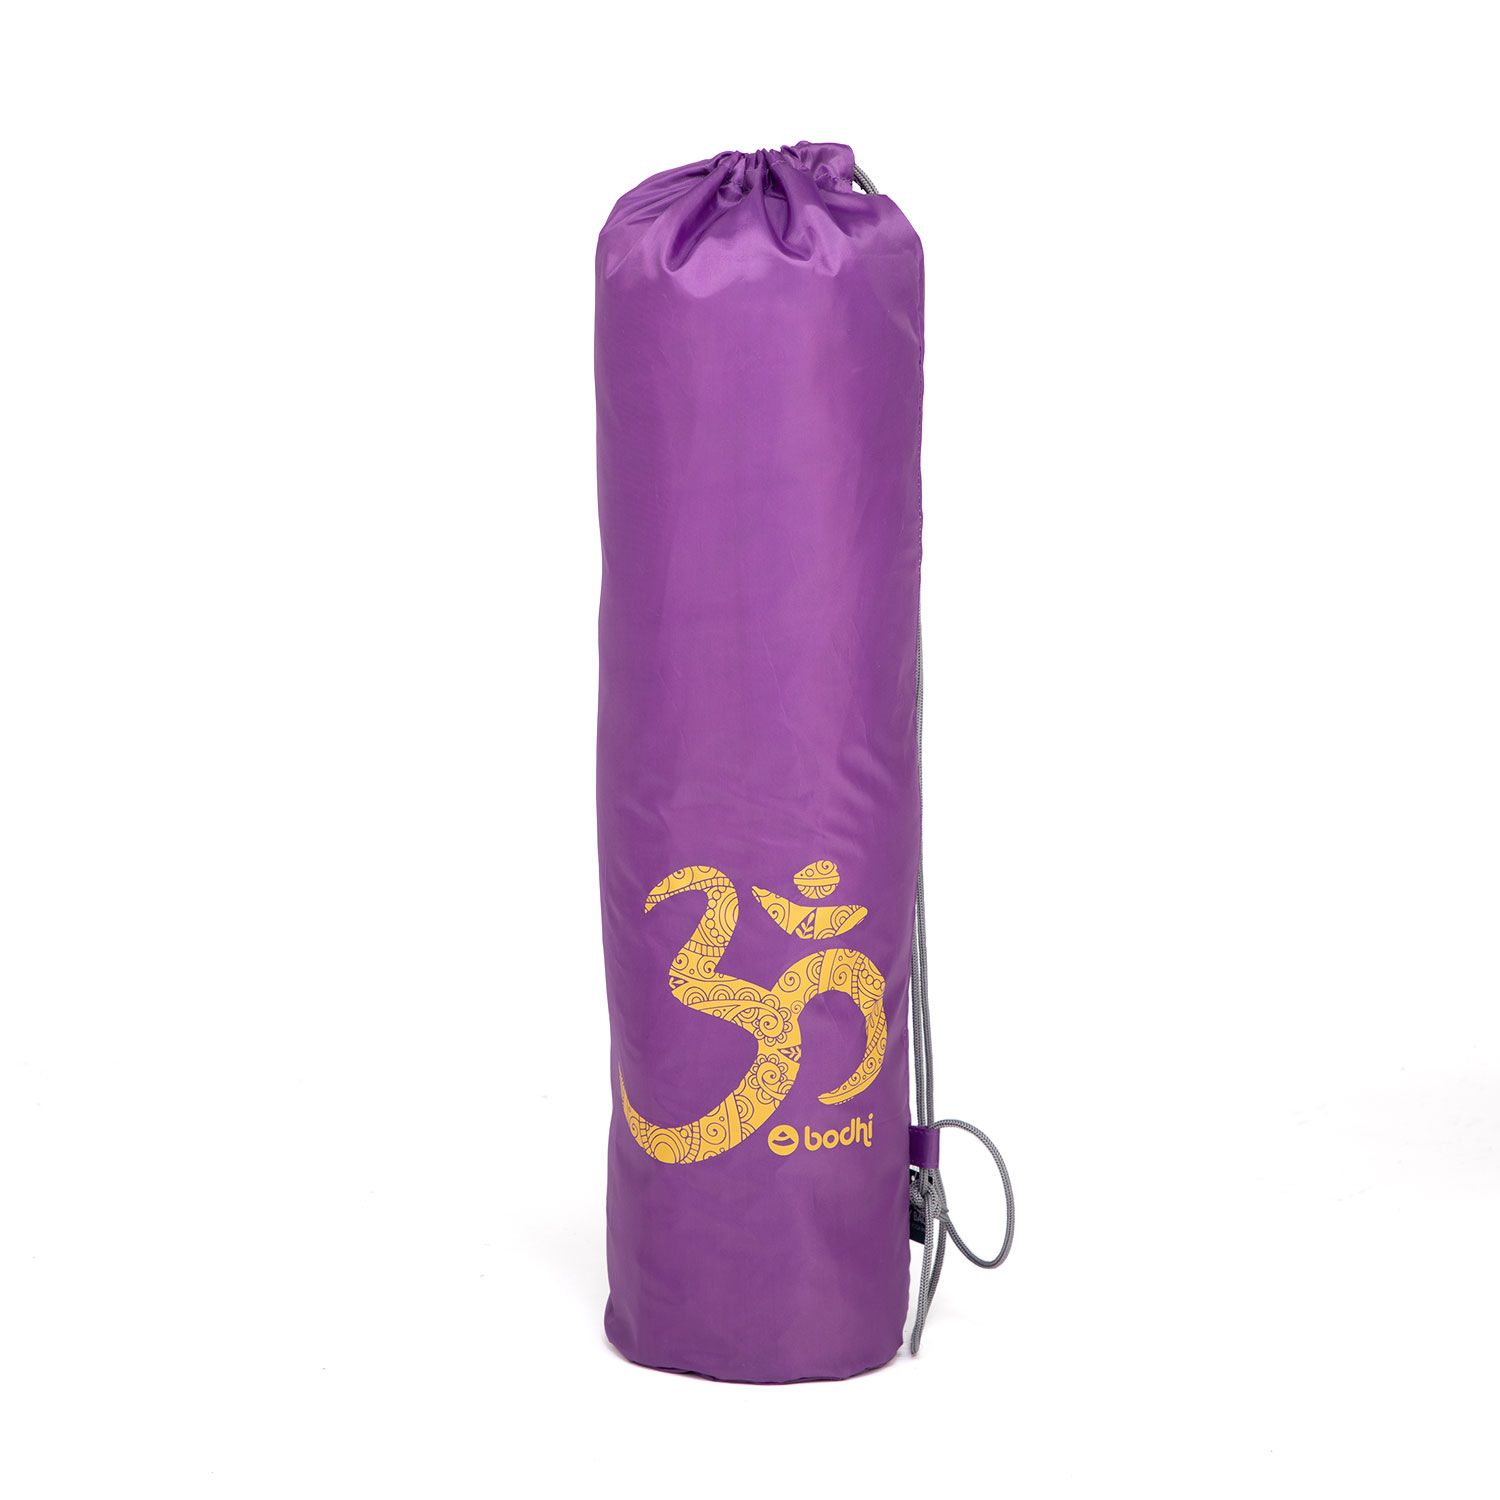 Easy Bag Yogamattentasche aus Polyester mit OM Print Aubergine